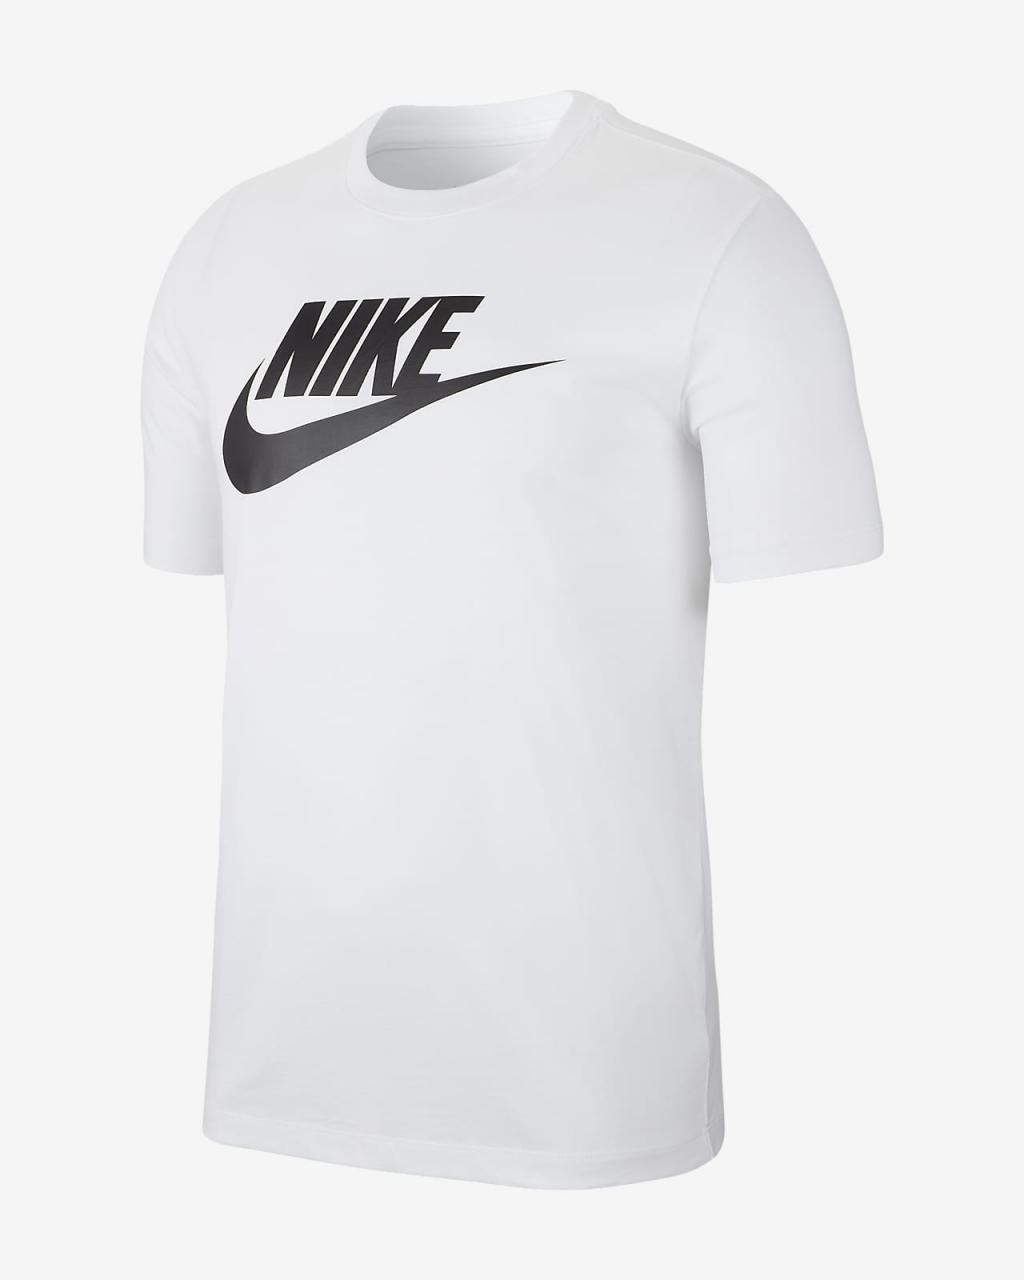 Nike Sportswear Men'S T-Shirt. Nike Vn